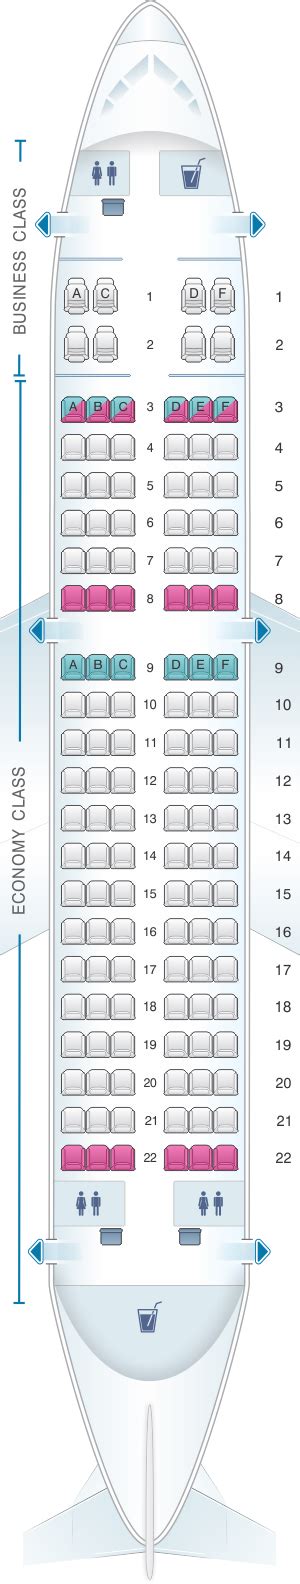 Seat Map Air Serbia Airbus A319